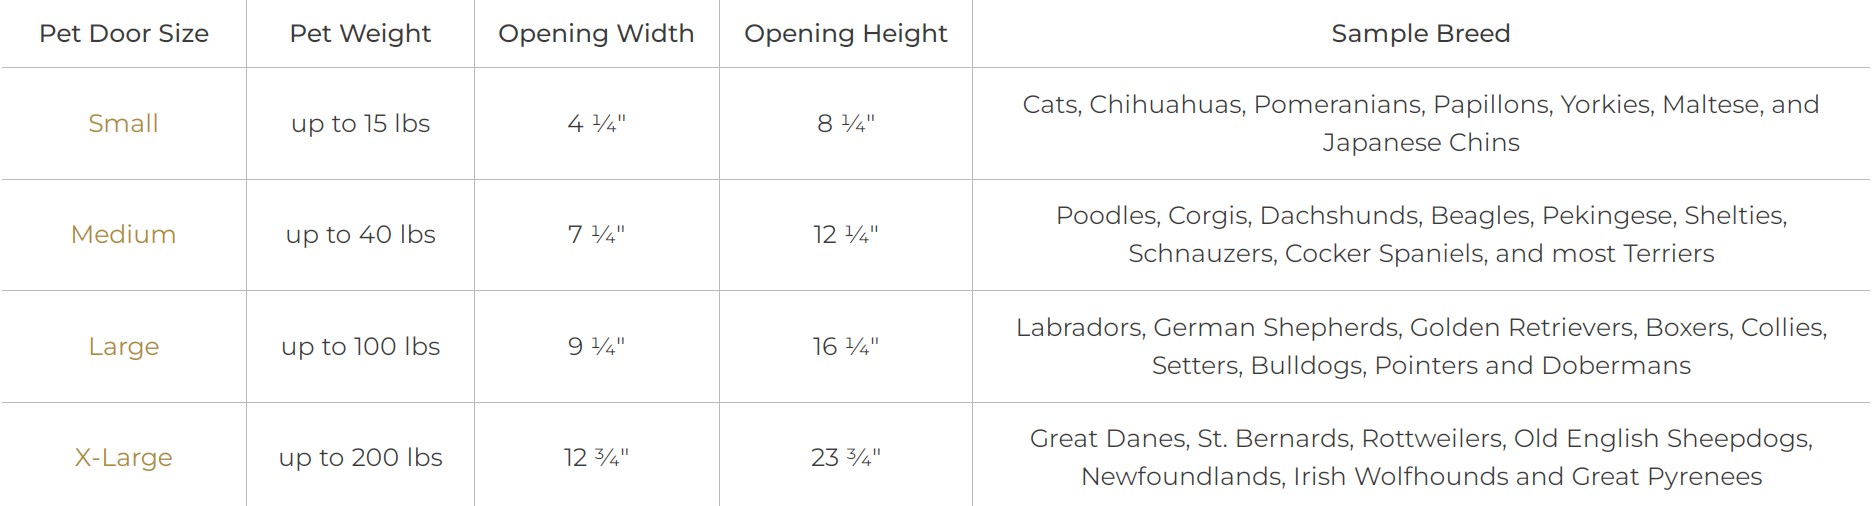 Pet Door Size Chart